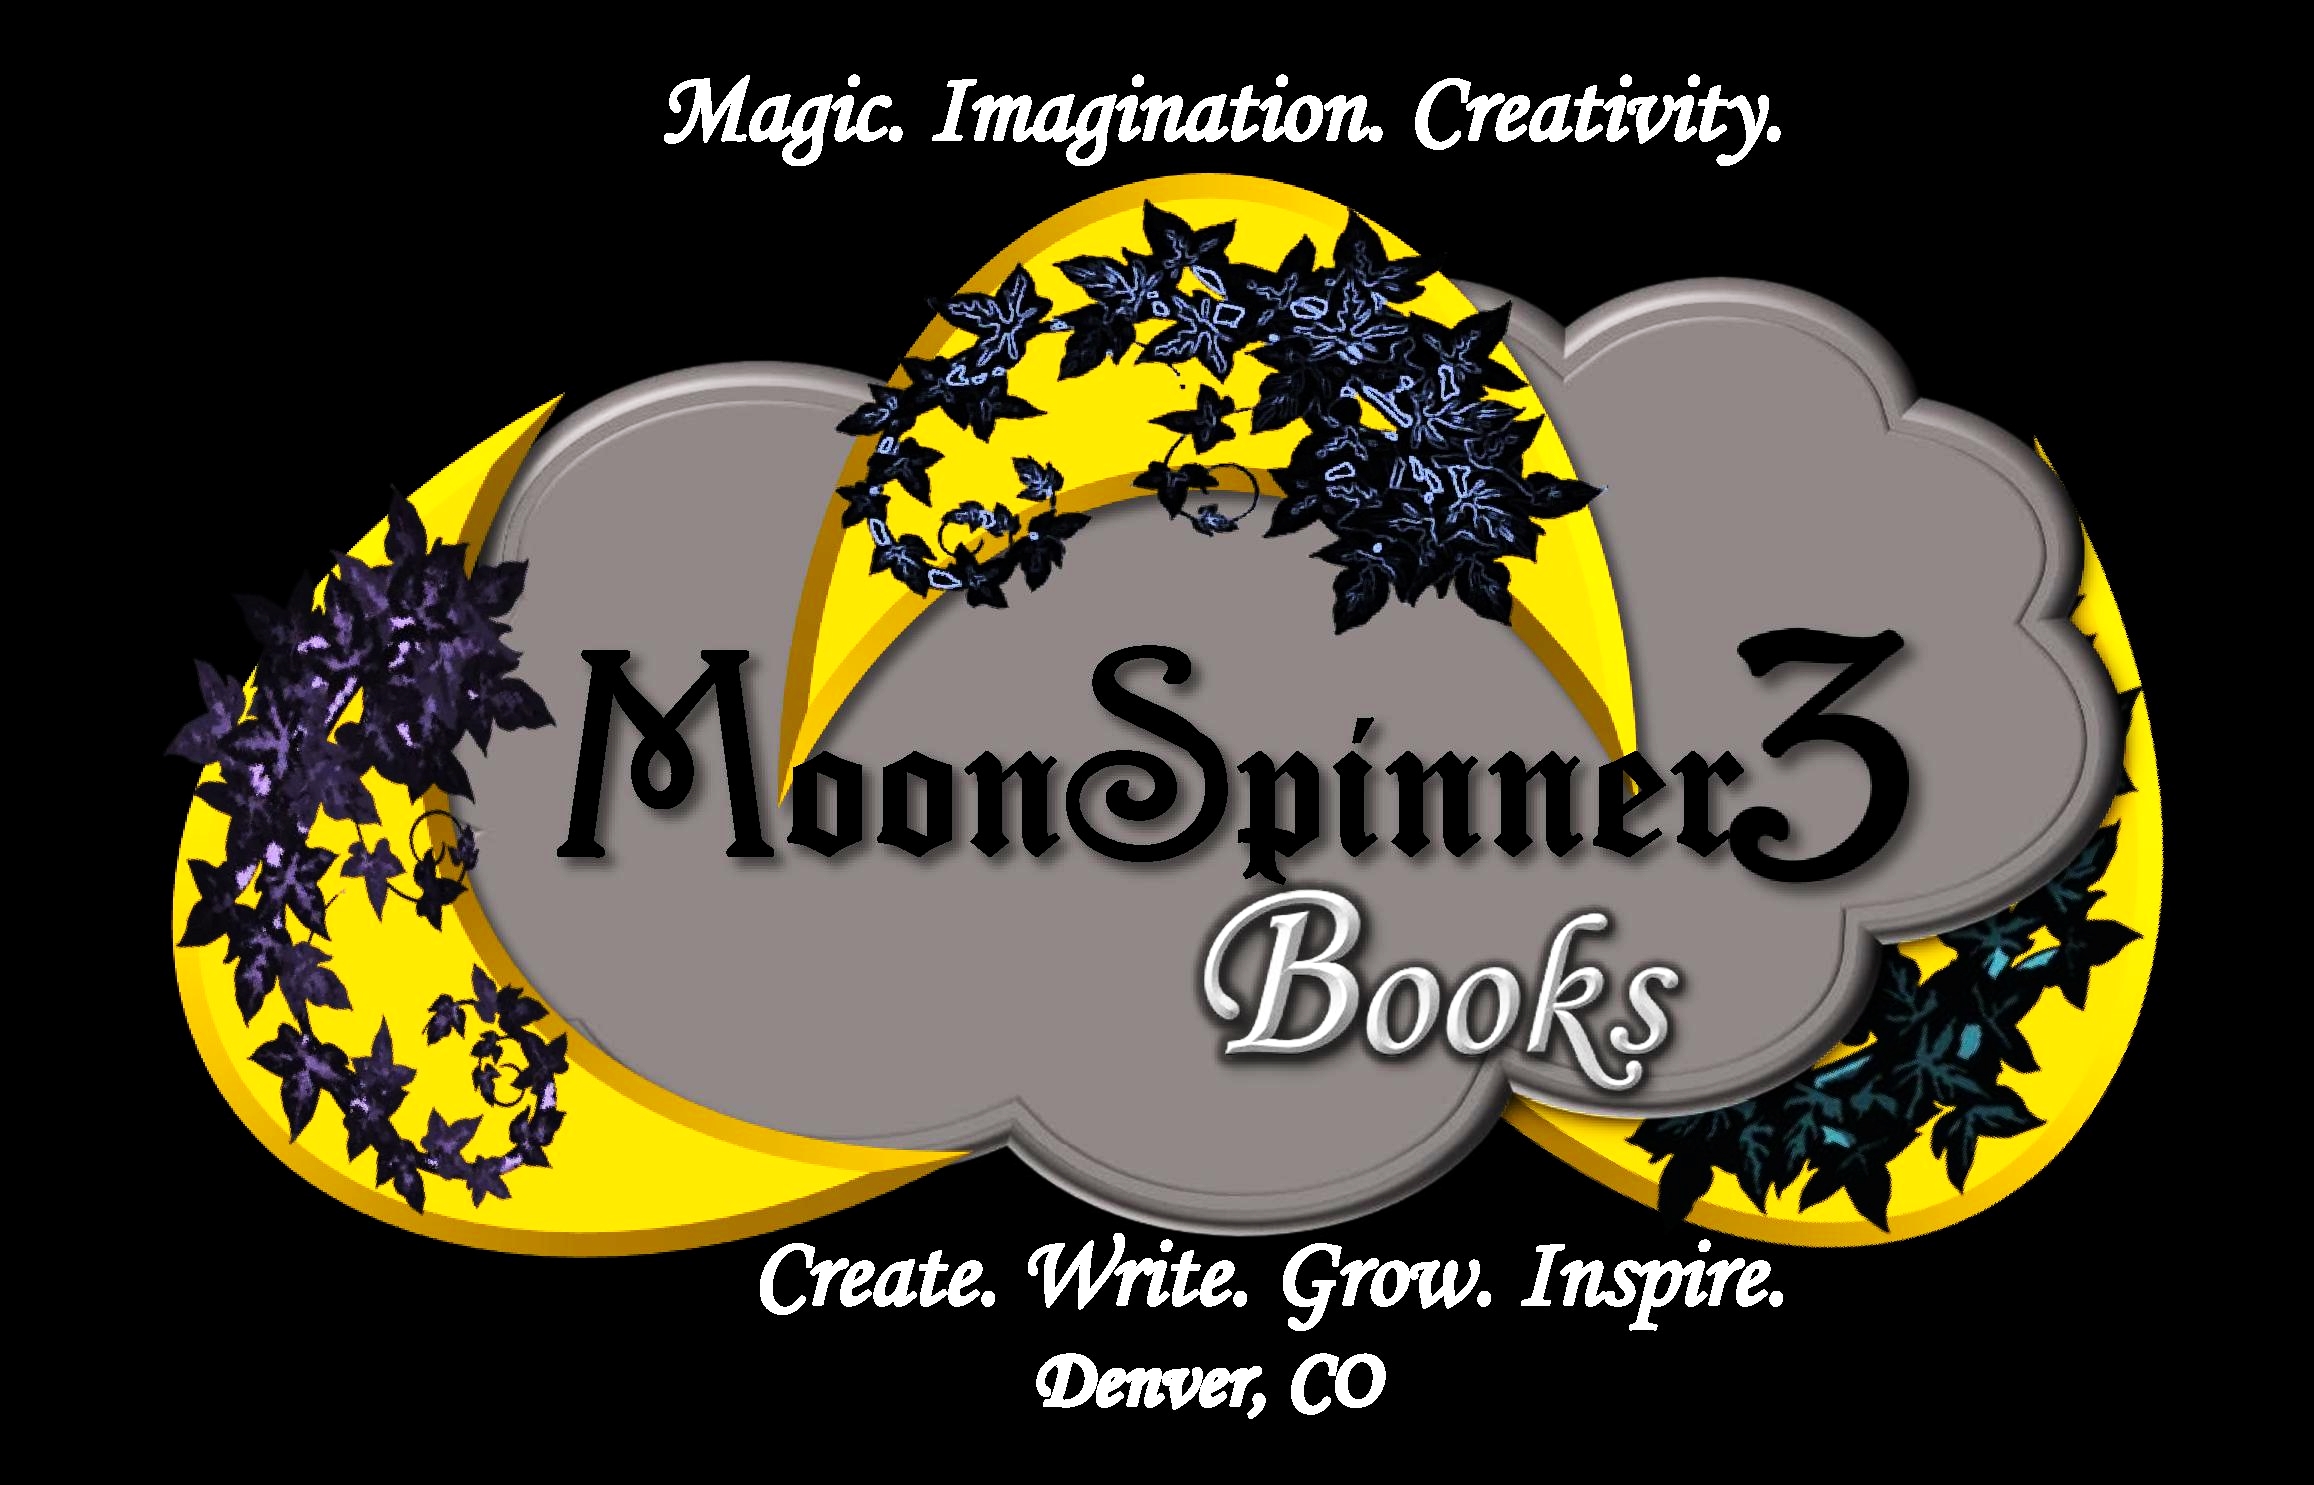 MoonSpinner3 Books